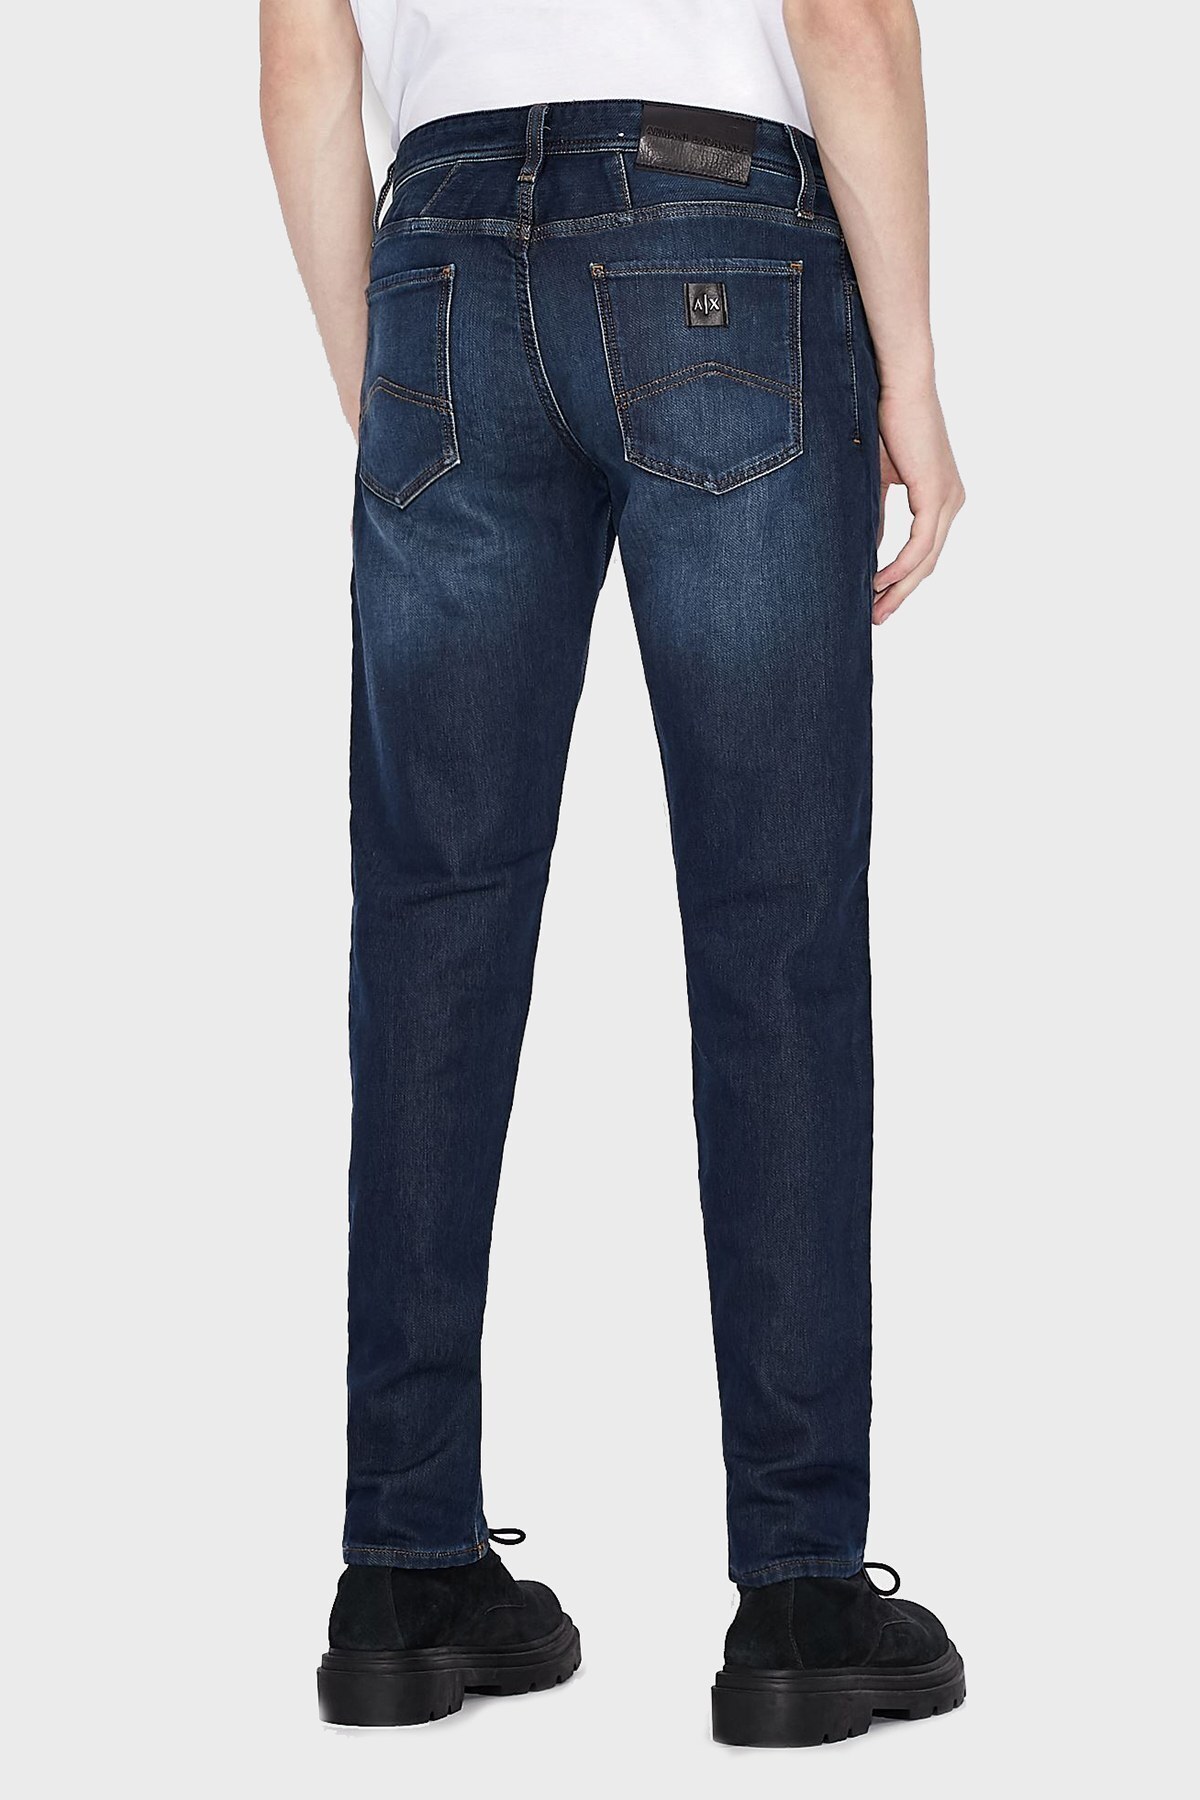 Armani Exchange Pamuklu Slim Fit J14 Jeans Erkek Kot Pantolon 6KZJ14 Z2P6Z 1500 LACIVERT